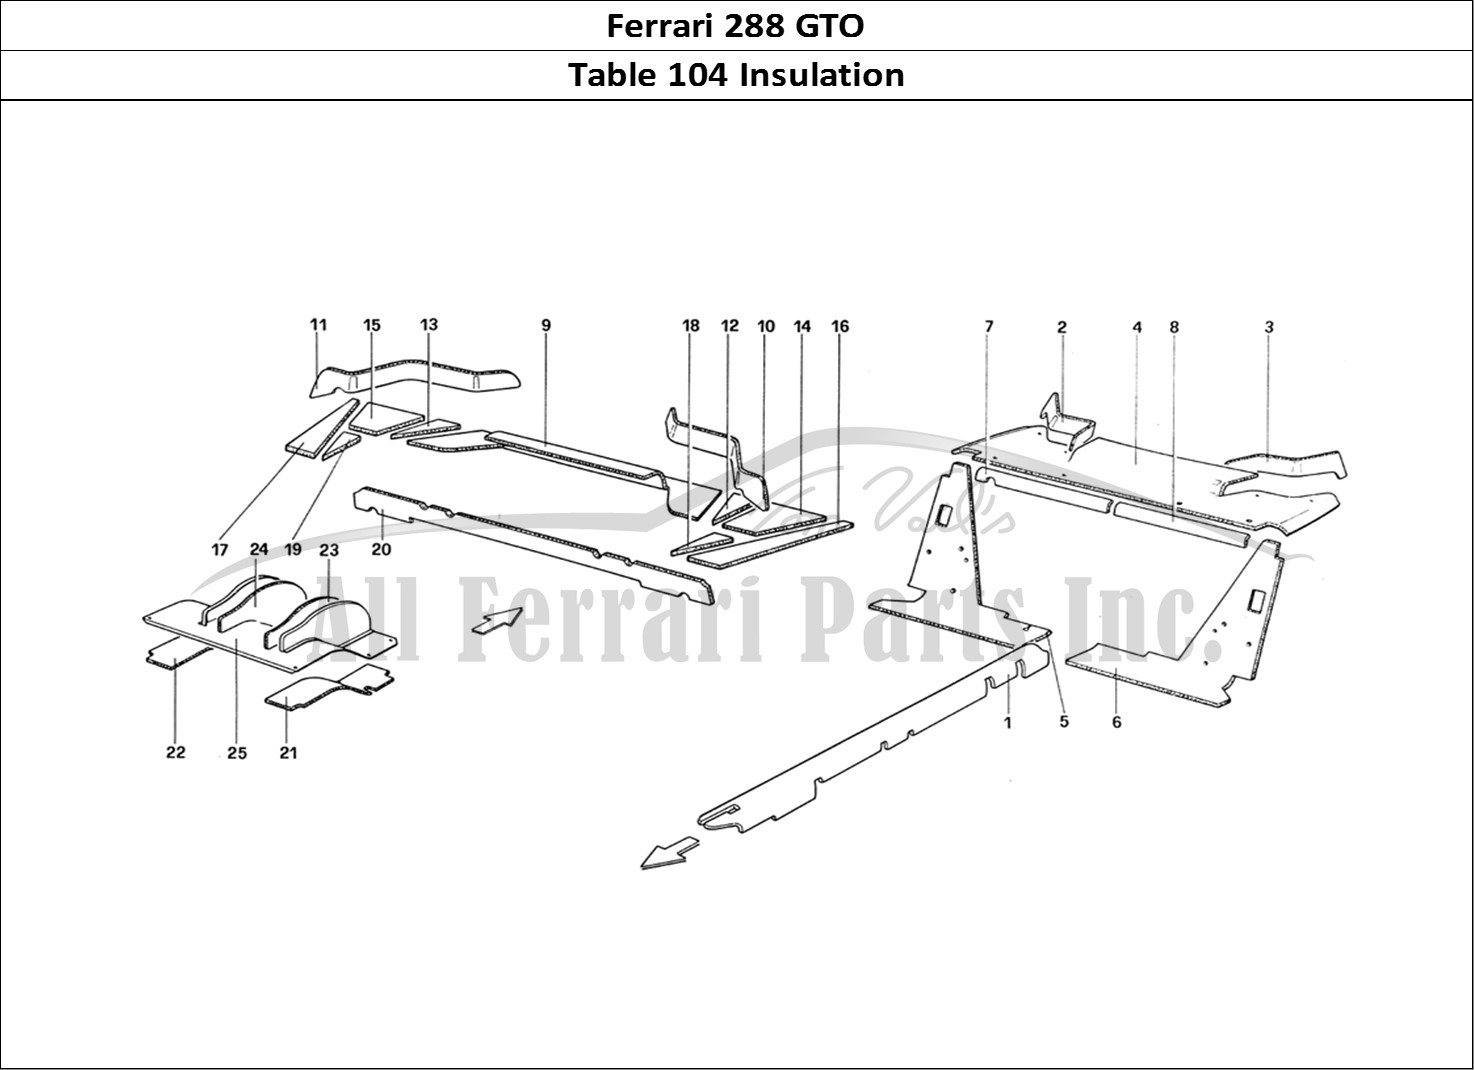 Ferrari Parts Ferrari 288 GTO Page 104 Insulations